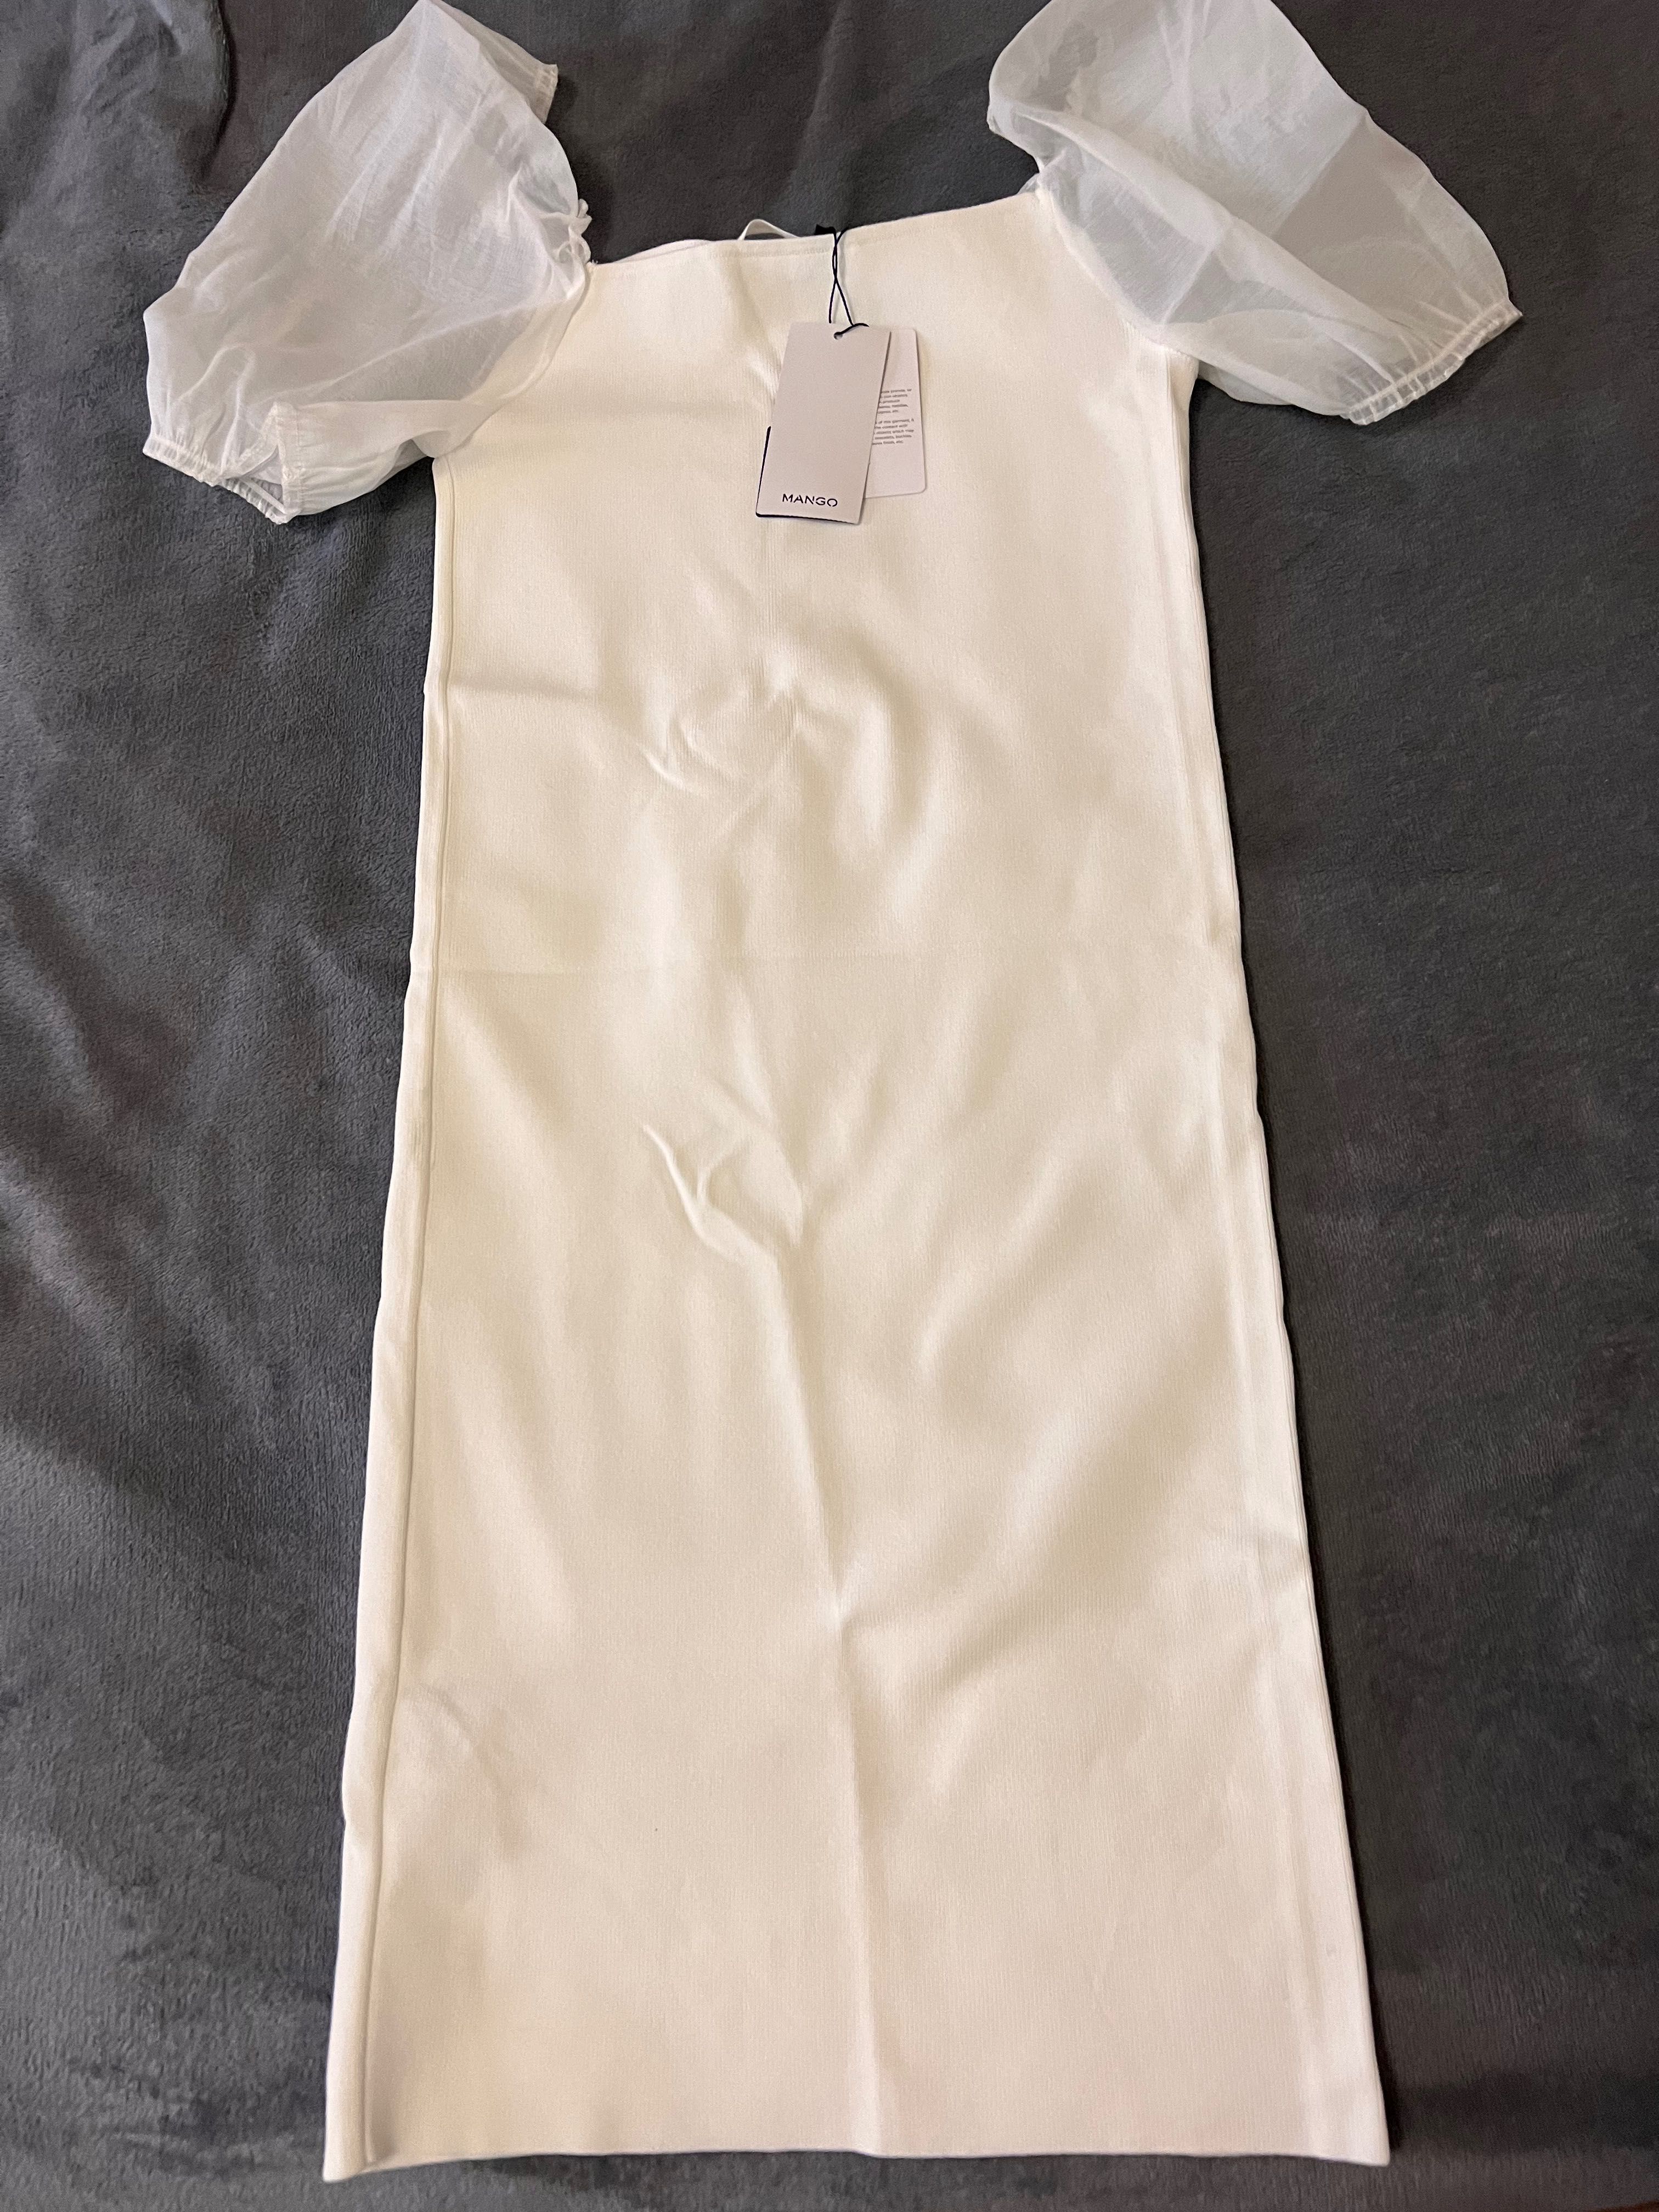 Летнее платье фирмы Манго размер Л, длина 76 см